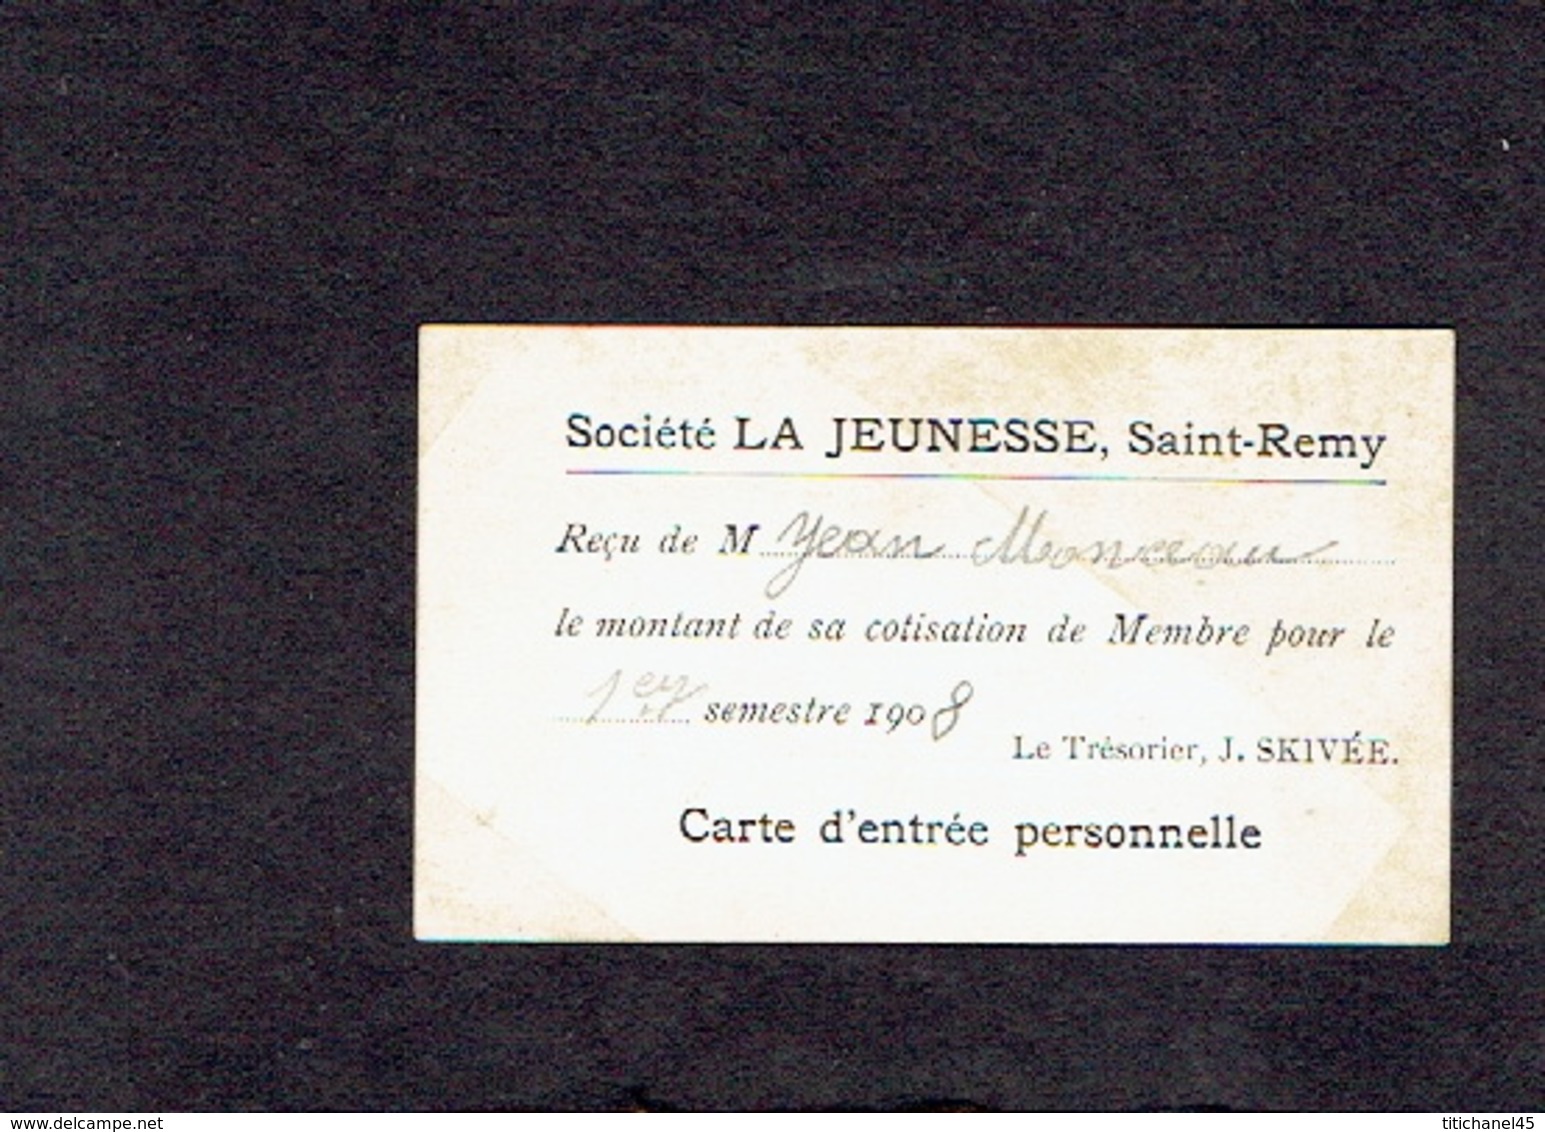 SAINT-REMY - Carte De Membre De 1908 De La Société LA JEUNESSE, SAINT-REMY - Reçu Le Montant Cotisation 1er Sem. 1908 - Cartes De Membre